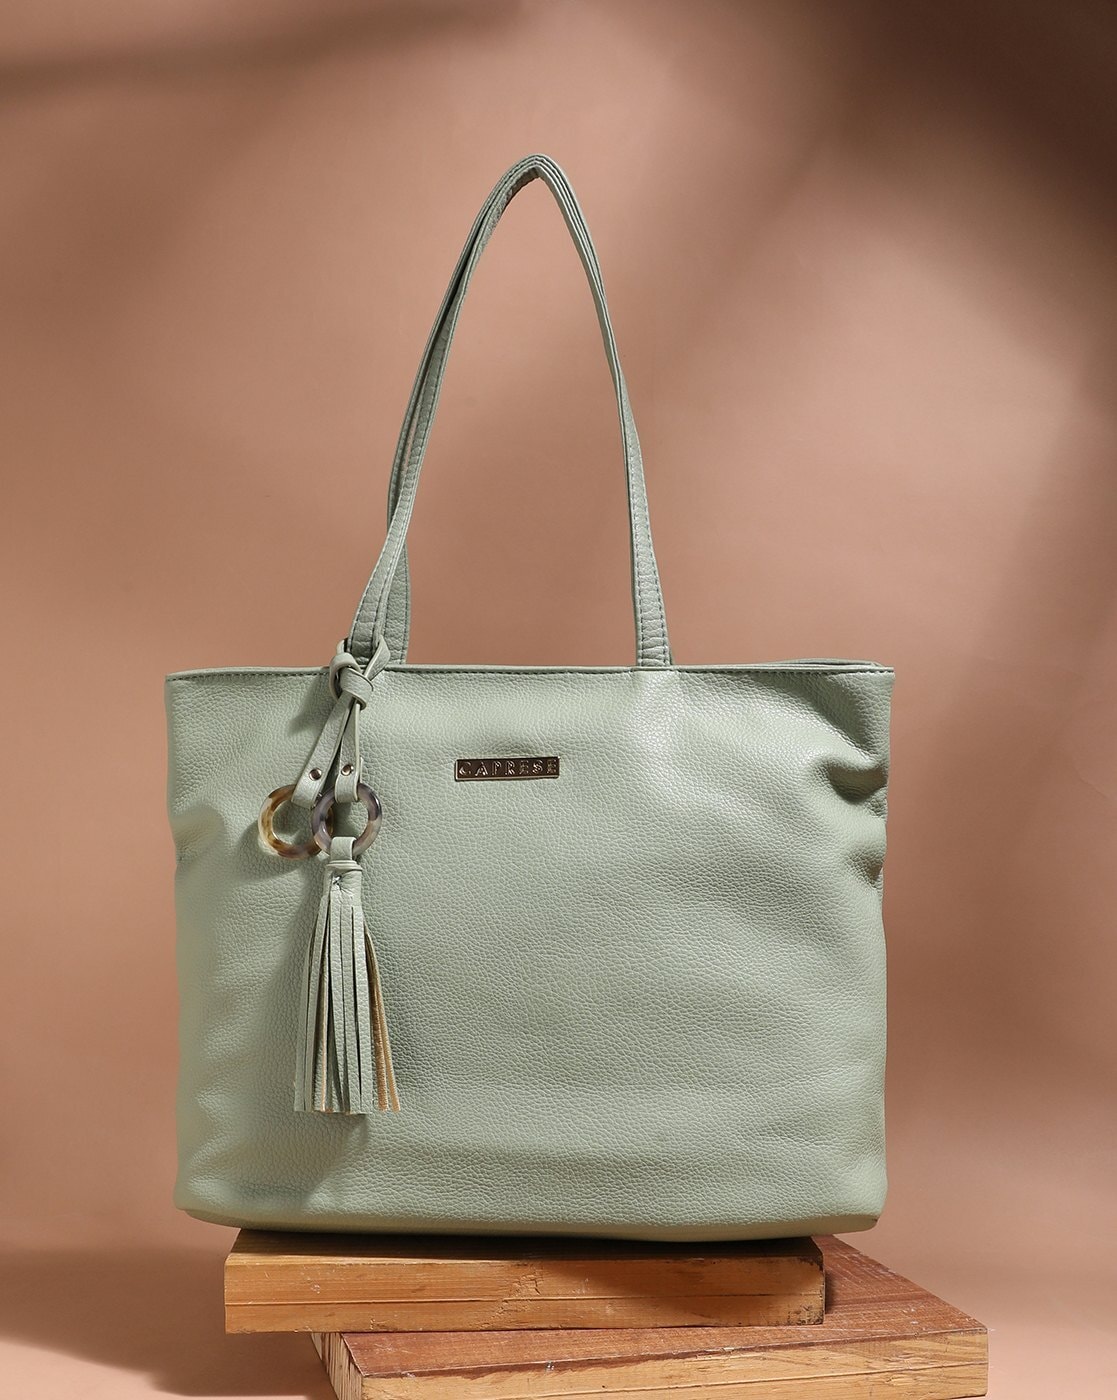 Green Caprese Handbags - Buy Green Caprese Handbags online in India